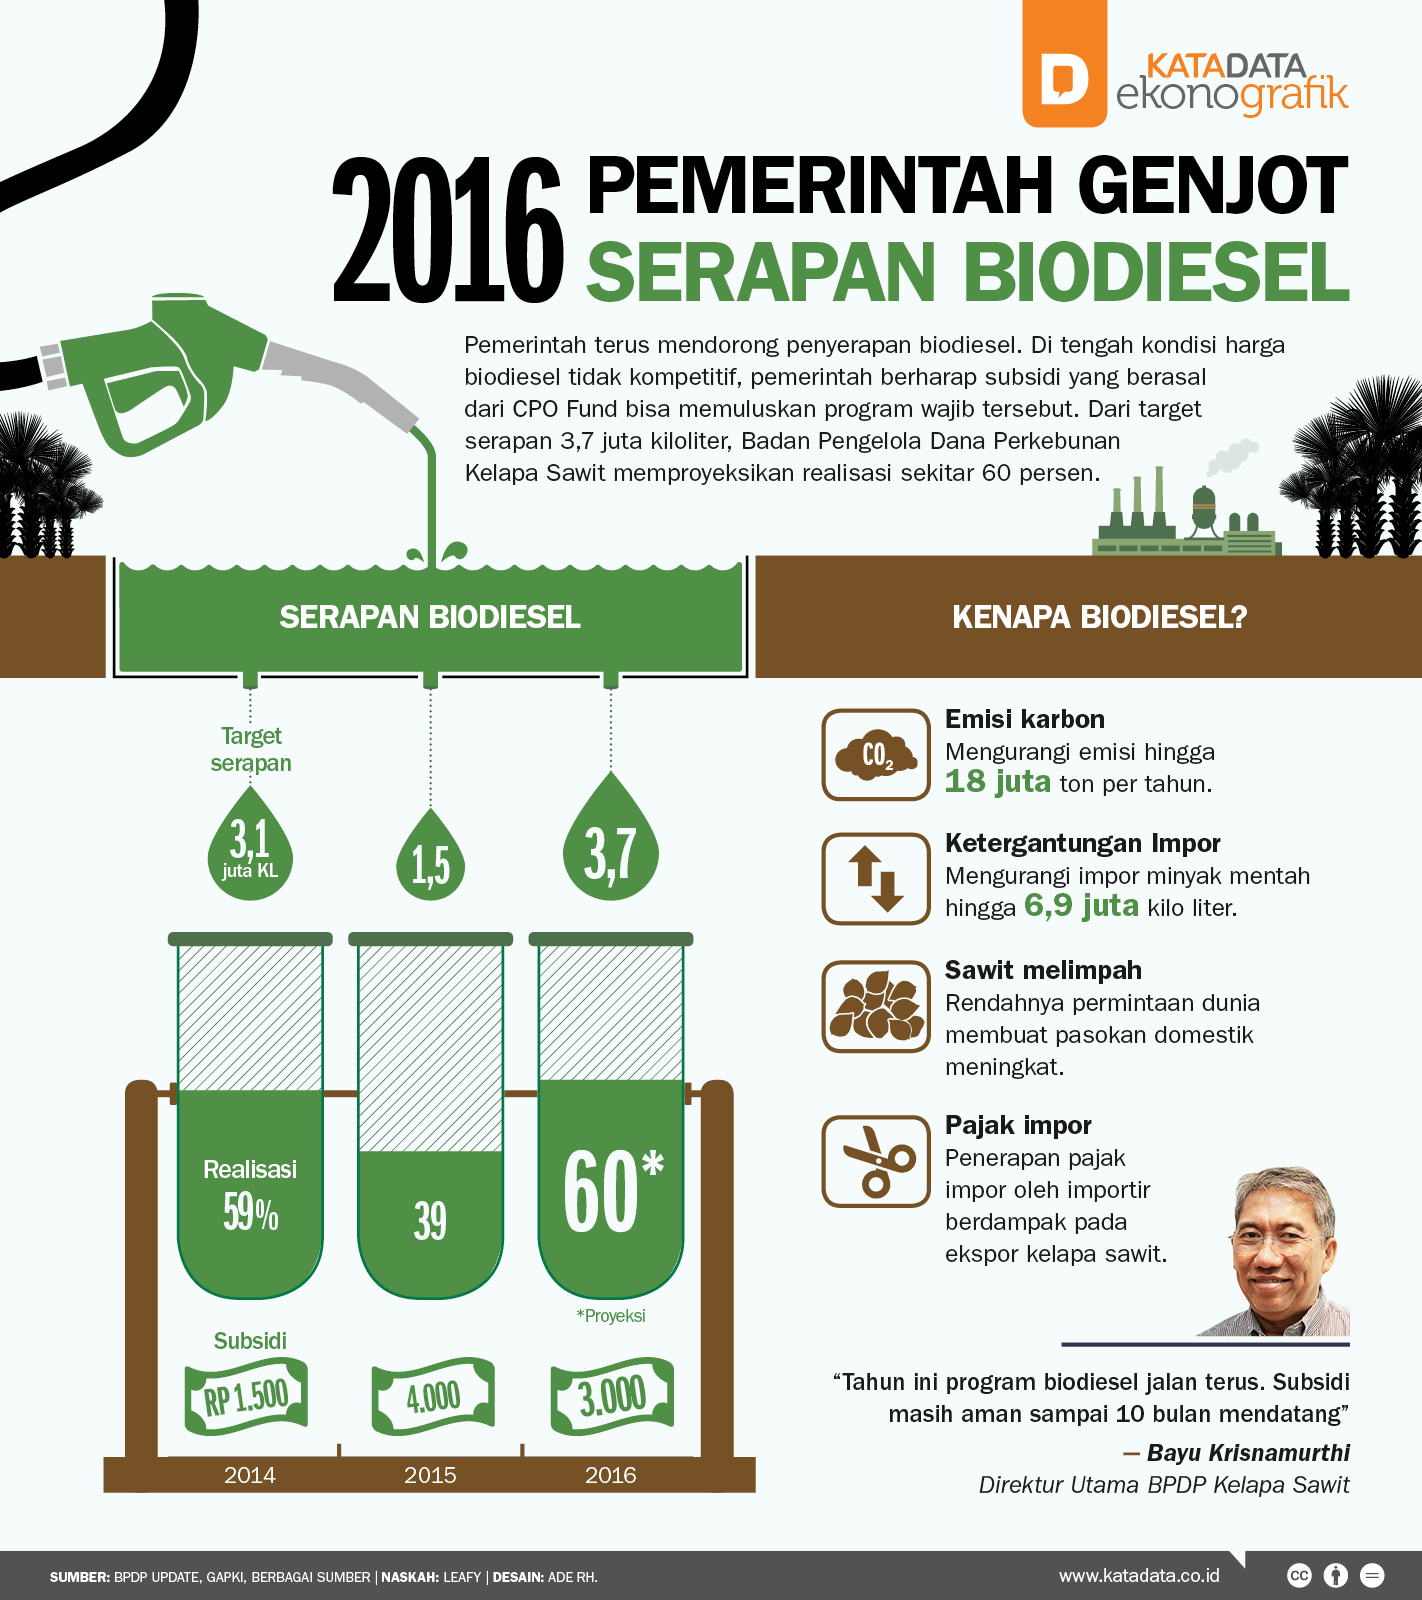 2016 Pemerintah Genjot Serapan Biodiesel